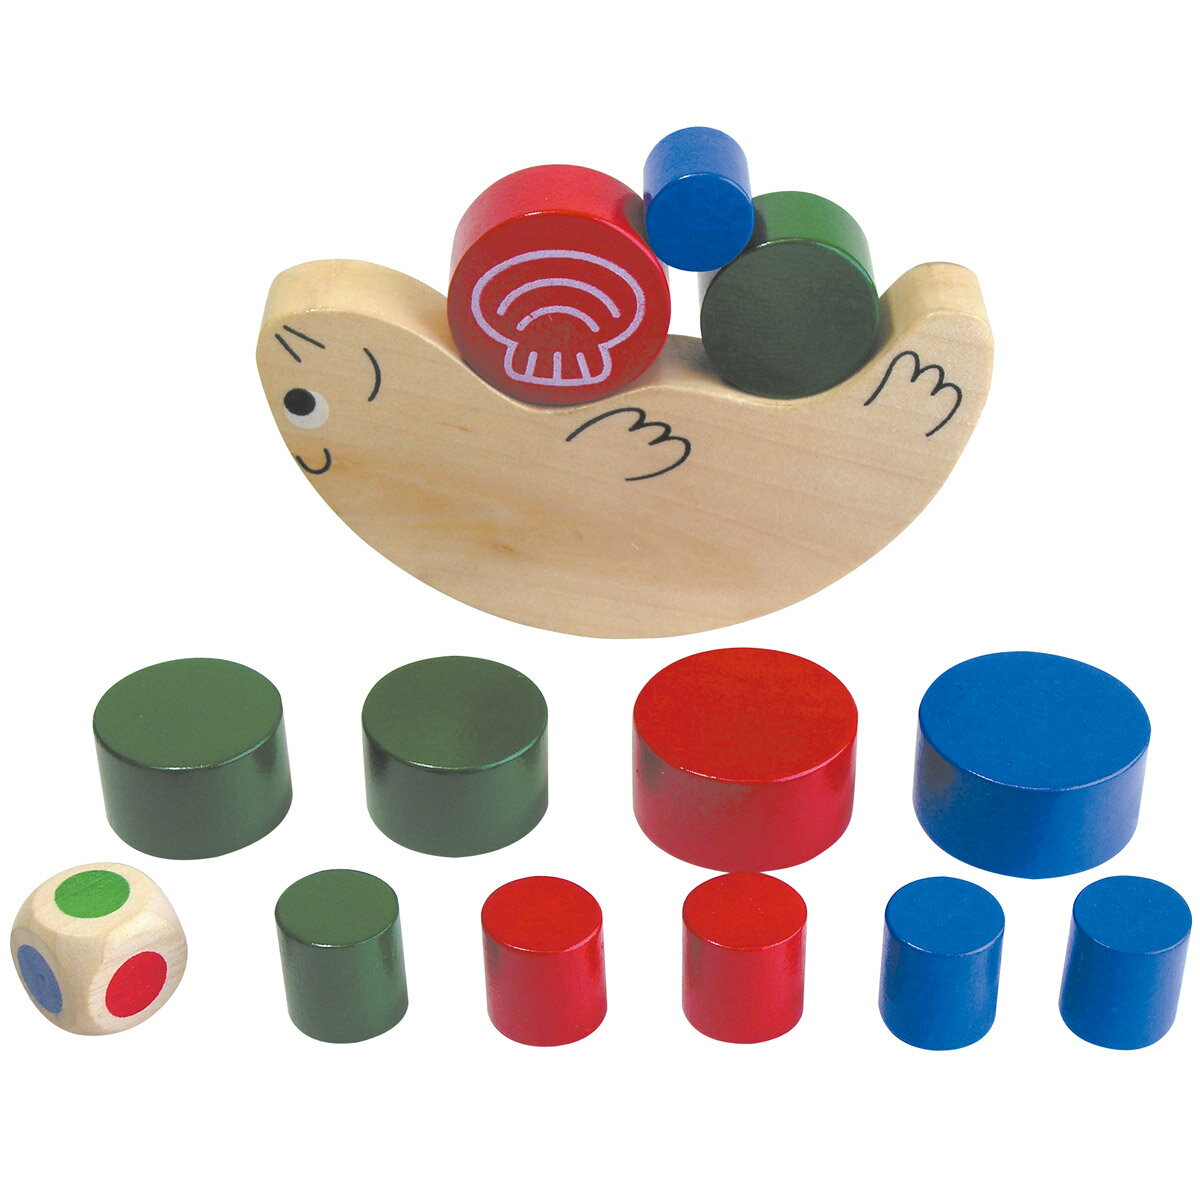 バランスゲーム ゆらゆら!どうぶつタワー 知育玩具 パズル 幼稚園 保育園 療育 OT 手先の訓練 作業療法 幼児 ゲーム商品番号:ATC-08053どうぶつをバランスよく積み上げよう！バランスゲームは指先の感覚を養います。簡易的な療育(作業療法・OT)ツールとしてもご活用ください。クジラバランス ゲーム バランスゲーム 木製玩具 木のおもちゃ 知育玩具 3歳 4歳 5歳 6歳 療育 OT 手先の訓練 作業療法 子供 幼児 室内商品番号:ATC-04046サイコロの色にしたがって、積み木をクジラの背中にのせよう！バランスゲームは指先の感覚を養います。簡易的な療育(作業療法・OT)ツールとしてもご活用ください。おはし あそび 知育玩具 木製 木のおもちゃ 子供 木のおもちゃ 木製玩具 バランスゲーム お箸 知育玩具 療育 OT 手先の訓練 作業療法 室内商品番号:ATC-00660楽しみながらおはしの練習ができます。指先の訓練にもなるため、簡単な療育(作業療法・OT)ツールとしても。4521718075921　ls@ATC-00655ラッコバランス ゲーム 木製玩具 木のおもちゃ バランスゲーム 知育玩具 キッズ用品 療育 OT 訓練 作業療法 室内007592かわいいラッコにブロックを積んでいくバランスゲームです。指先の訓練にもなるため、簡単な療育(作業療法・OT)ツールとしても。セット内容:ラッコ×1、青×3、赤×3、緑×3、サイコロ×1かわいいラッコにブロックを積んでいくバランスゲーム。&nbsp;ラッコバランス ゲーム 木製玩具 木のおもちゃ バランスゲーム 知育玩具 キッズ用品 療育 OT 訓練 作業療法 室内スペック商品サイズラッコ/100×55×15mm円柱大×3/φ30×15mm円柱中×3/φ25×15mm円柱小×6/φ15×15mmサイコロ/15×15×15mm材質木生産国中国 アーテック ※仕様及び外観は改善のため、予告なく変更することがあります。●クリスマス【●こども館】